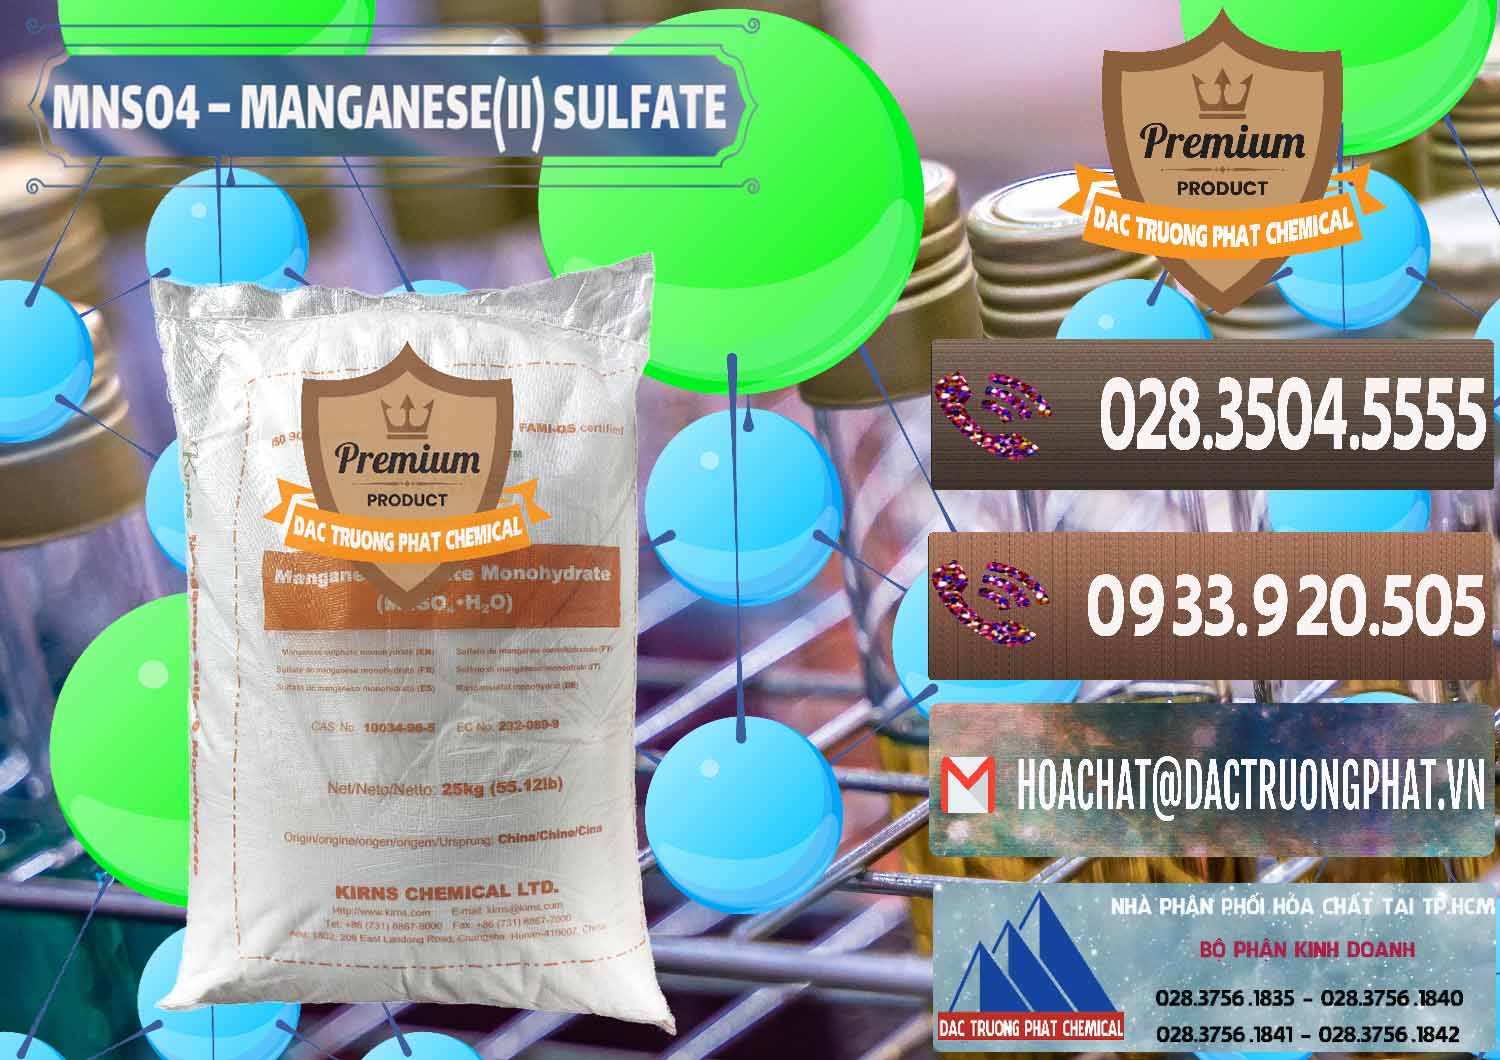 Cty chuyên cung cấp _ bán MNSO4 – Manganese (II) Sulfate Kirns Trung Quốc China - 0095 - Chuyên kinh doanh _ cung cấp hóa chất tại TP.HCM - hoachatviet.net